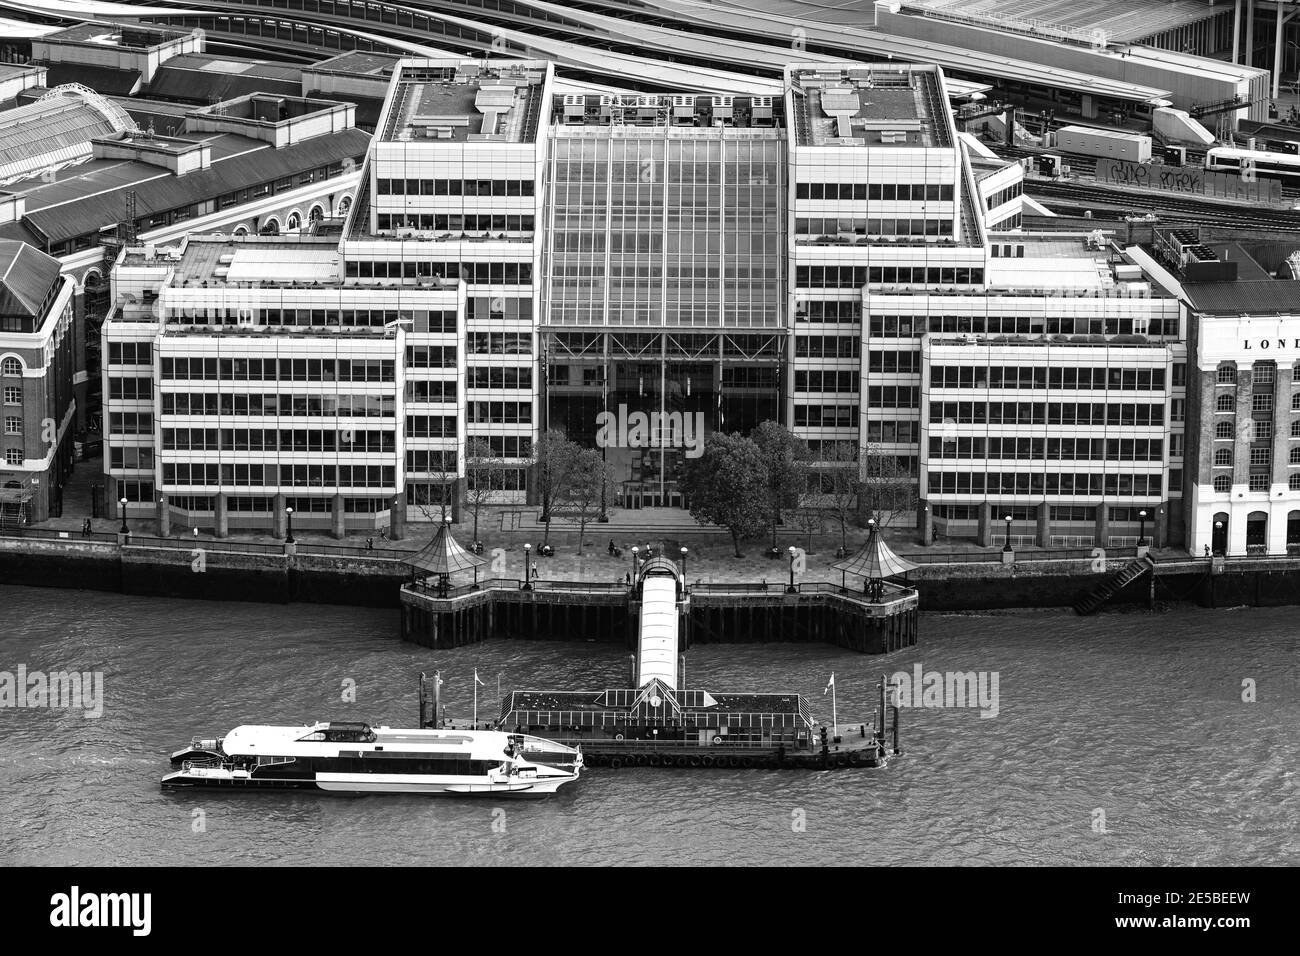 Vista aerea del Cottons Centre, del Tamigi e del London Bridge City Pier, Londra, Regno Unito. Foto Stock